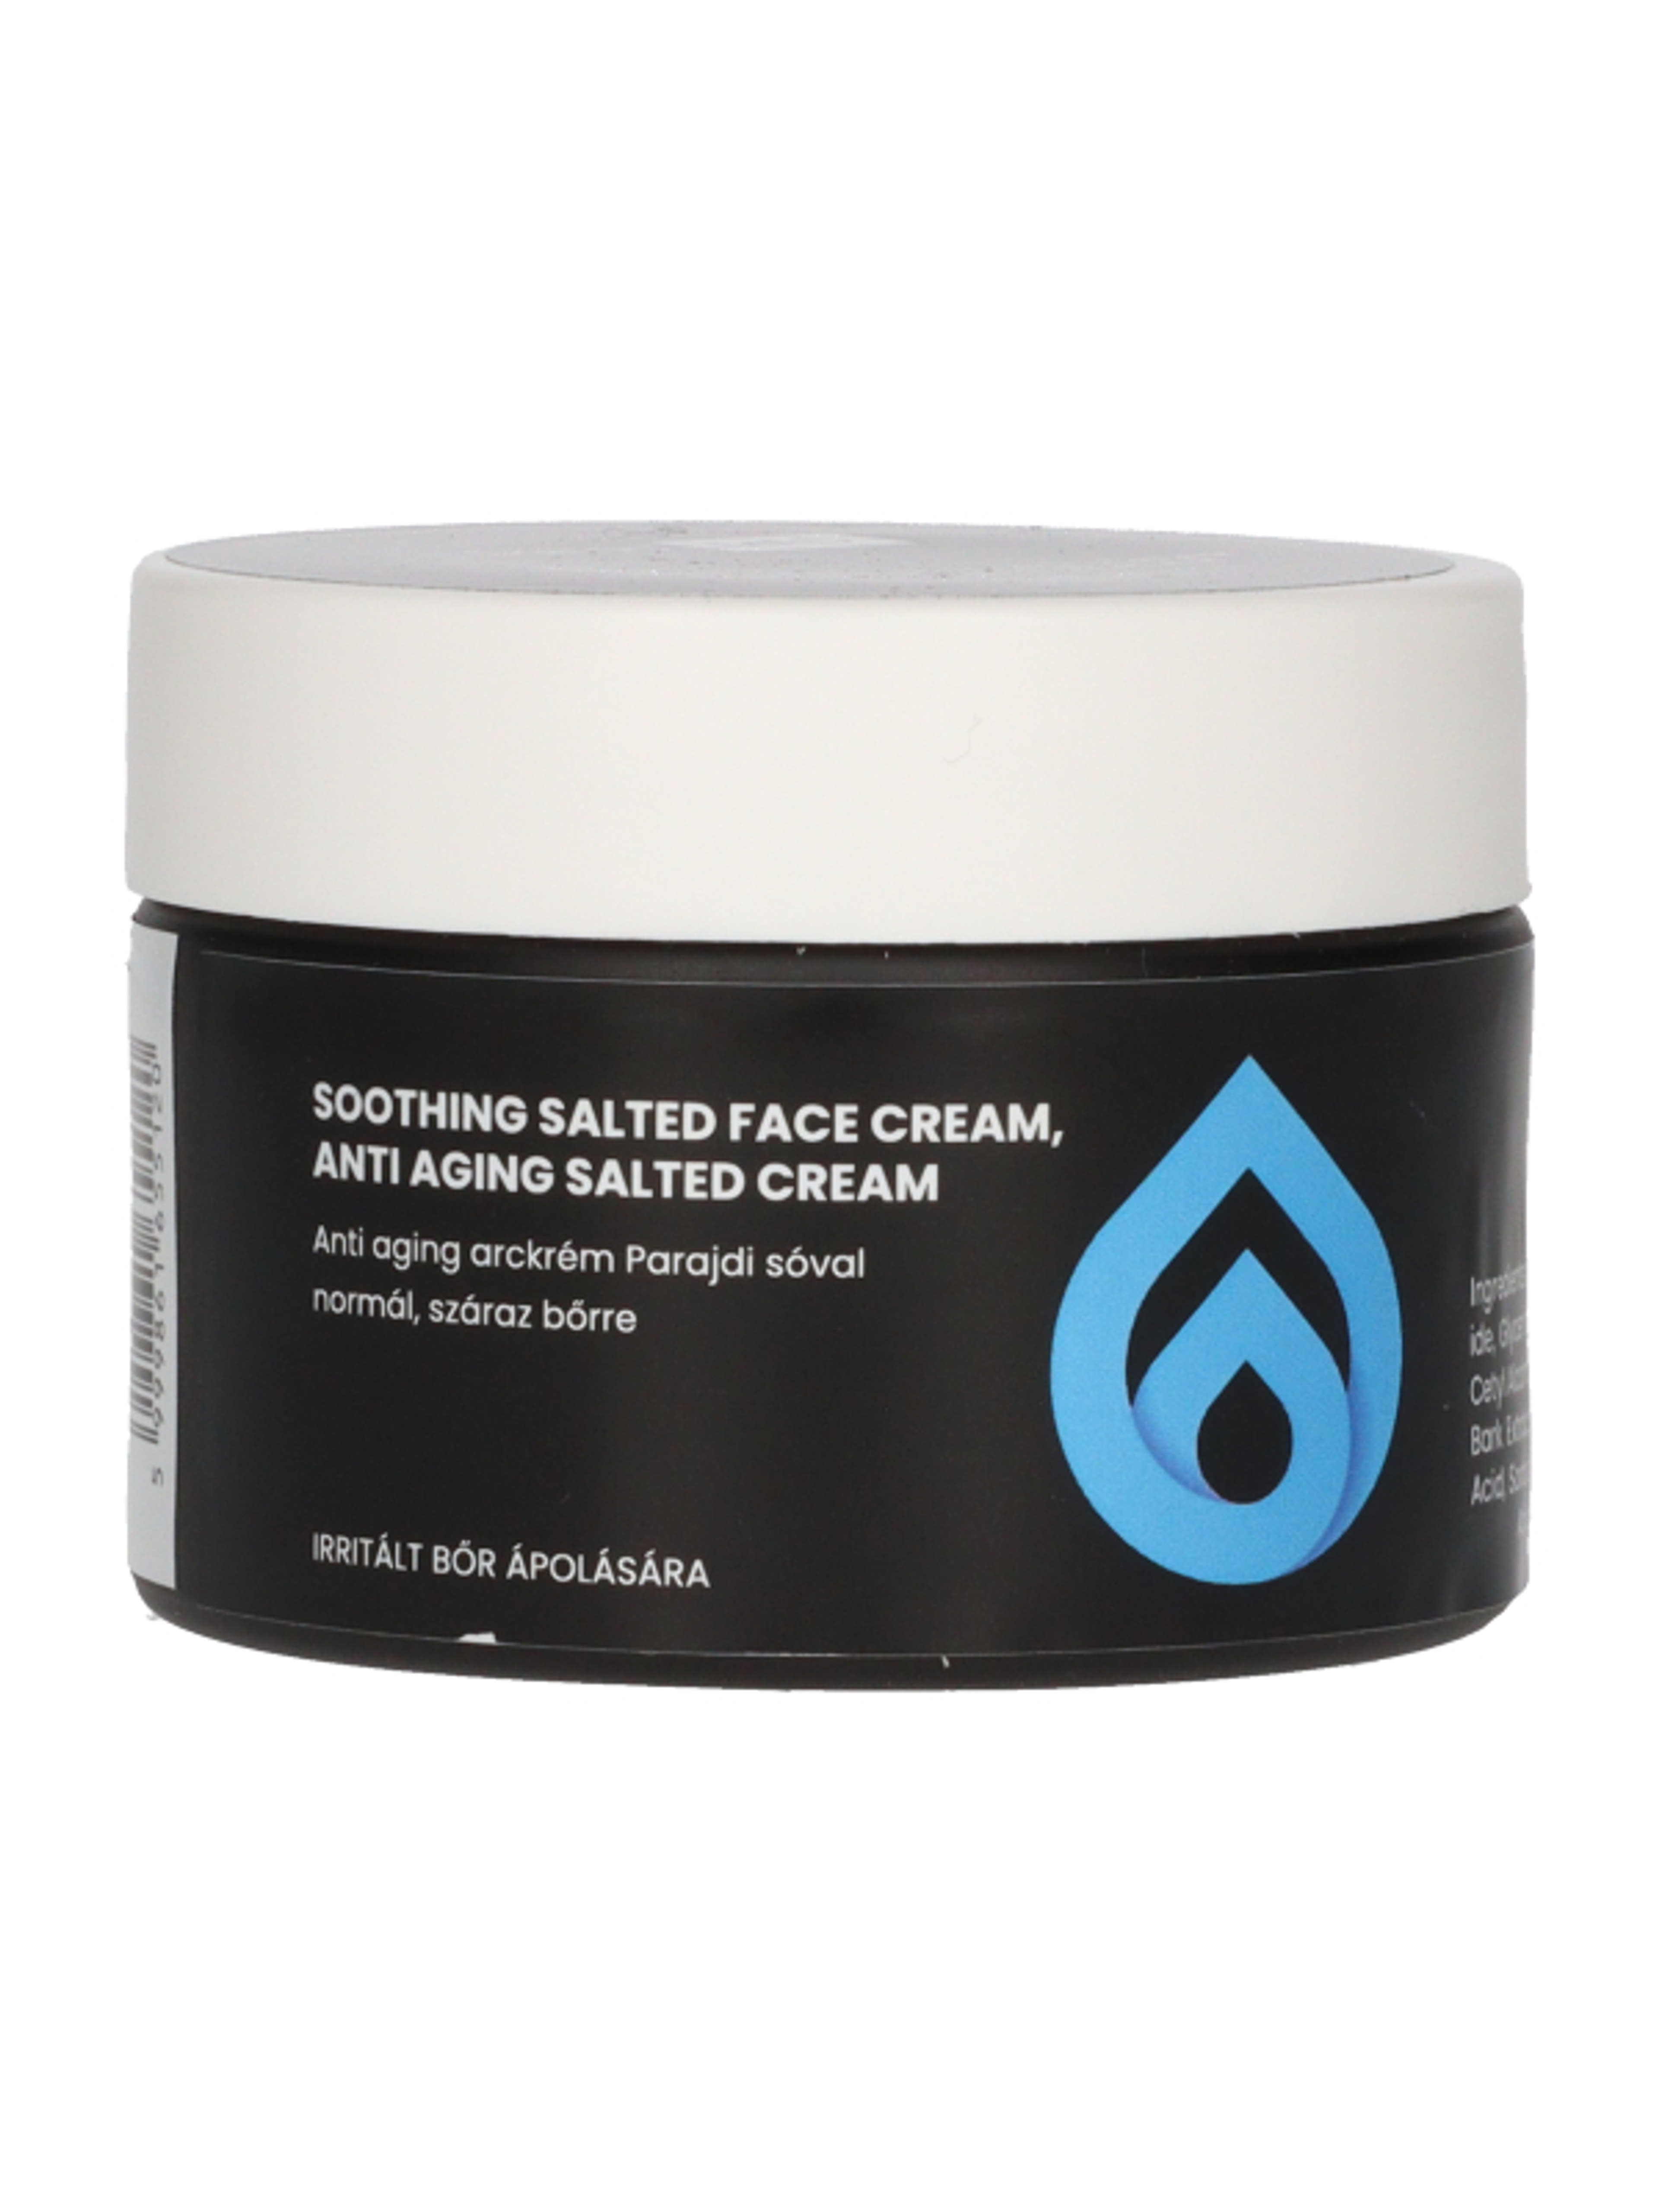 SaltedMED Anti-aging parajdi sós arckrém normál, száraz bőrre - 50 ml-2